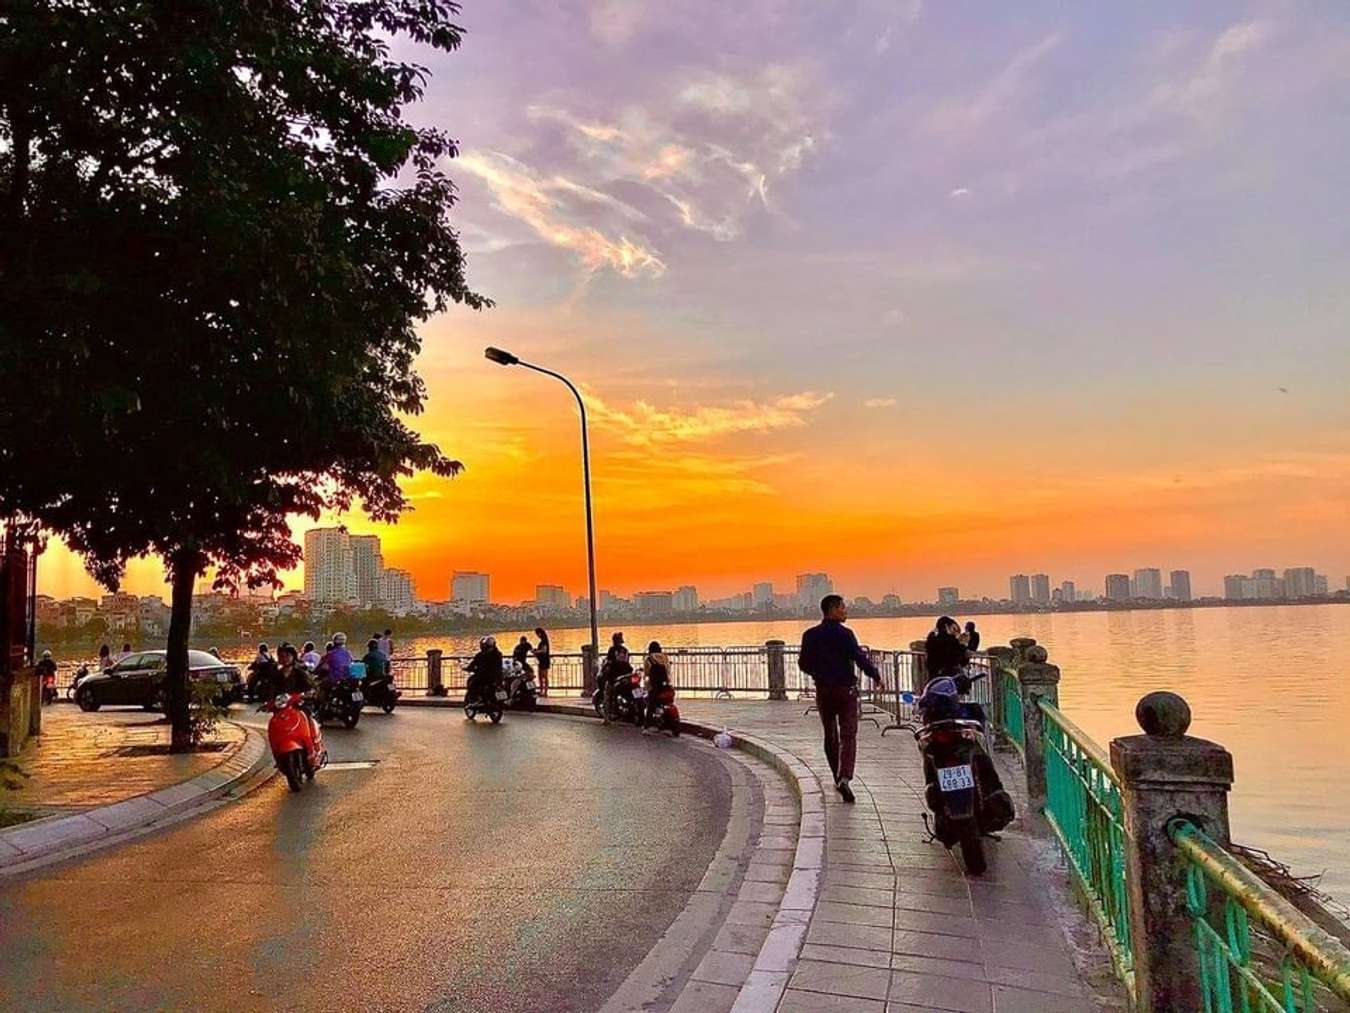 Hồ Tây là một trong những địa điểm du lịch nổi tiếng ở thủ đô Hà Nội. Với khung cảnh yên tĩnh, trong lành và ánh hoàng hôn đẹp như tranh vẽ, Hồ Tây thu hút du khách không chỉ vì cảnh đẹp, mà còn bởi những hoạt động giải trí như chèo thuyền và đọc sách. Bấm vào hình ảnh để khám phá thêm về Hồ Tây.